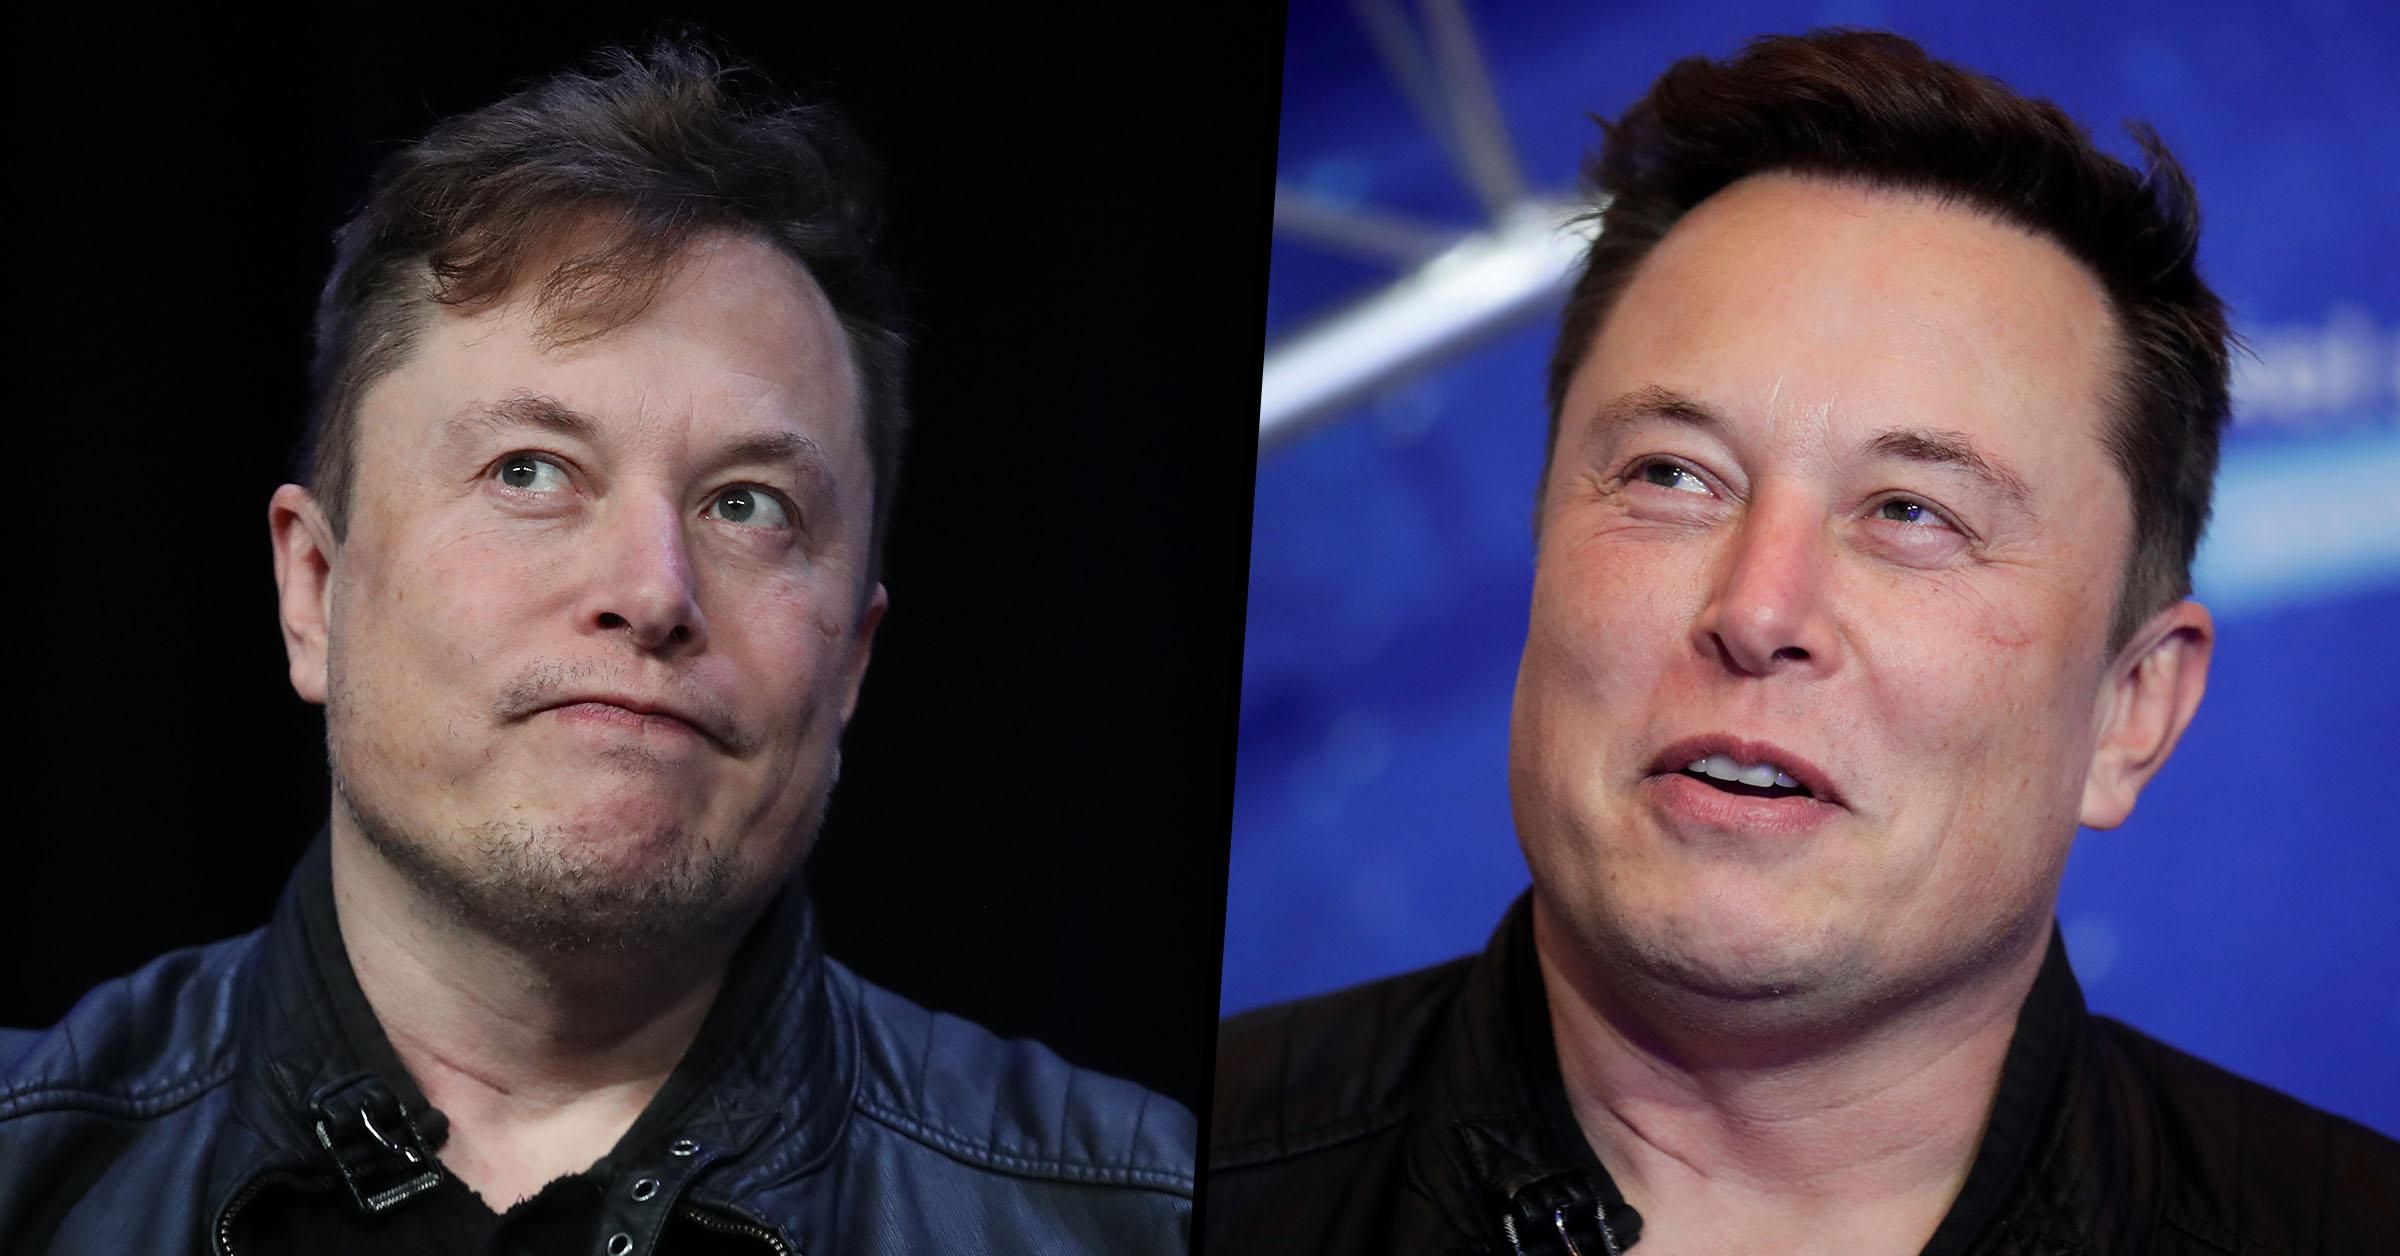 Elon Musk Is No Longer the World’s Richest Man